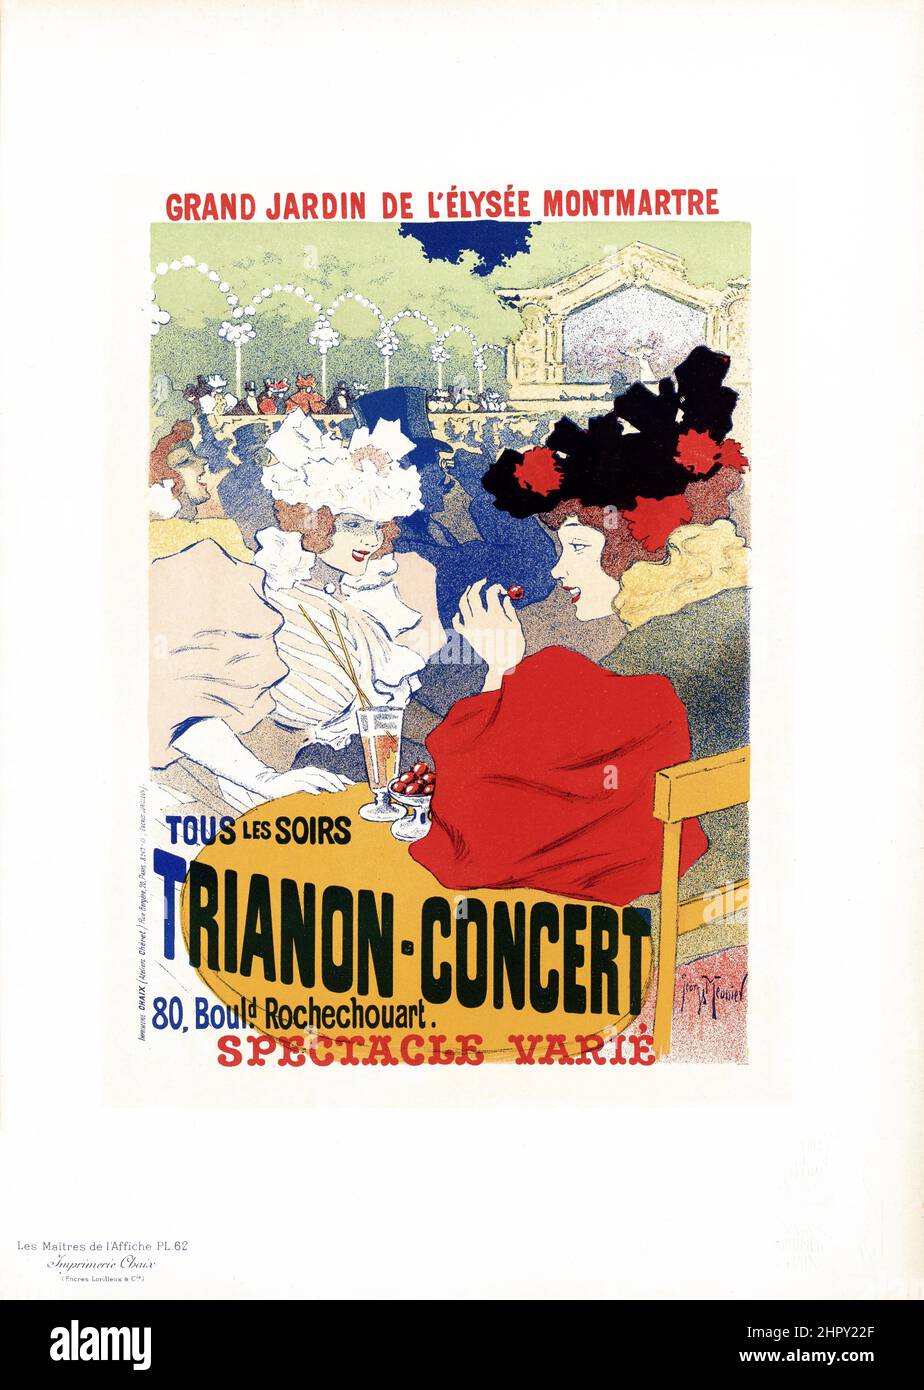 Maitres de l'affiche Vol 2 - Plato 62 - Georges Meunier - Trianon-Concert 1895. Foto de stock